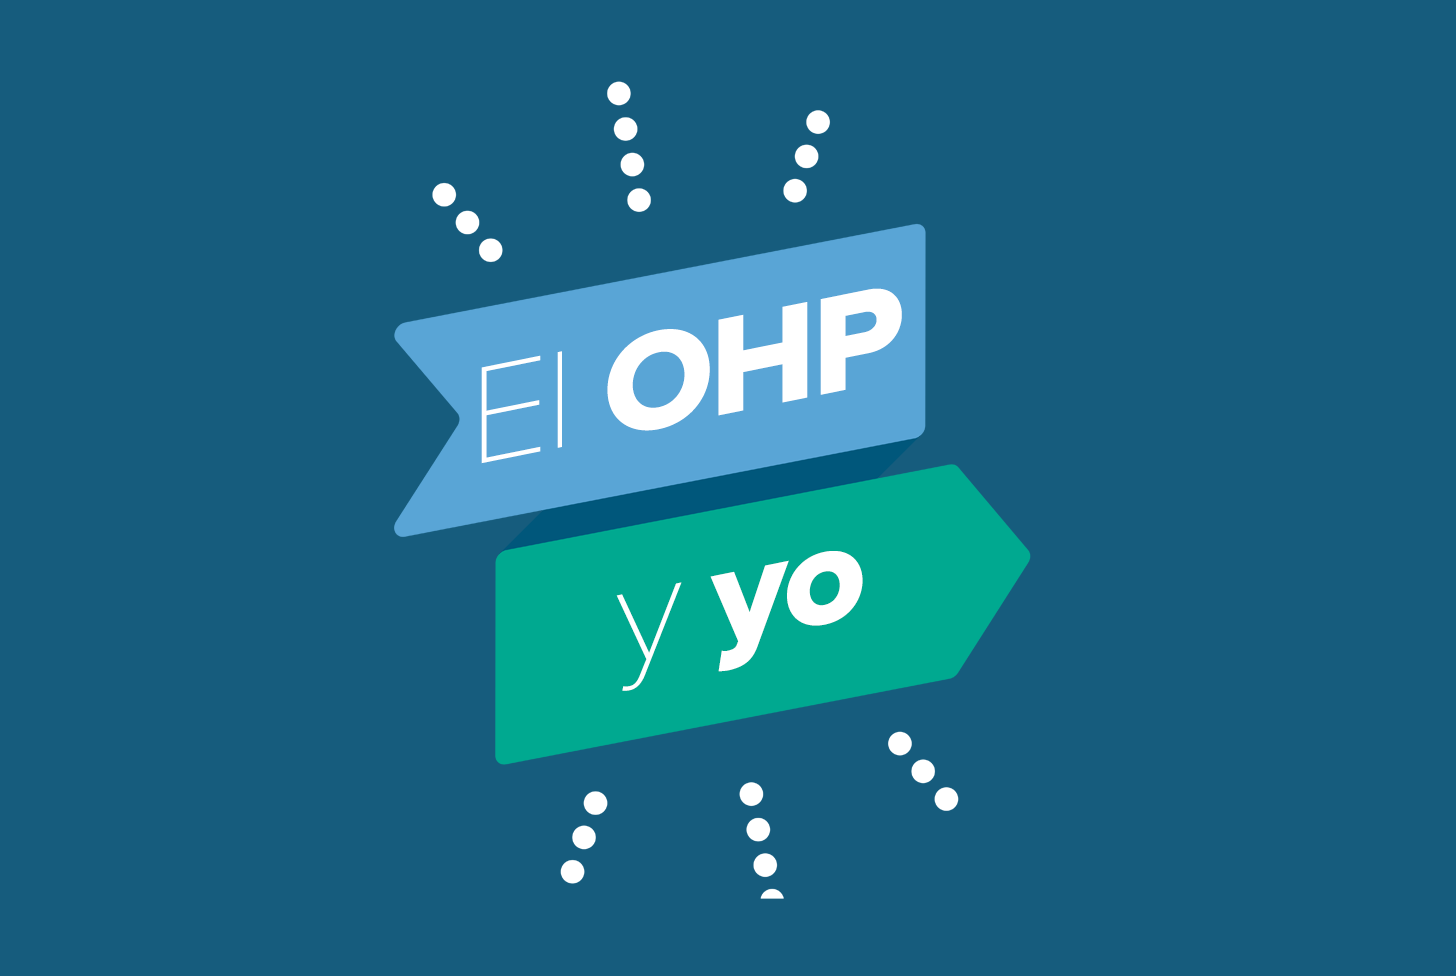 OHP-yo